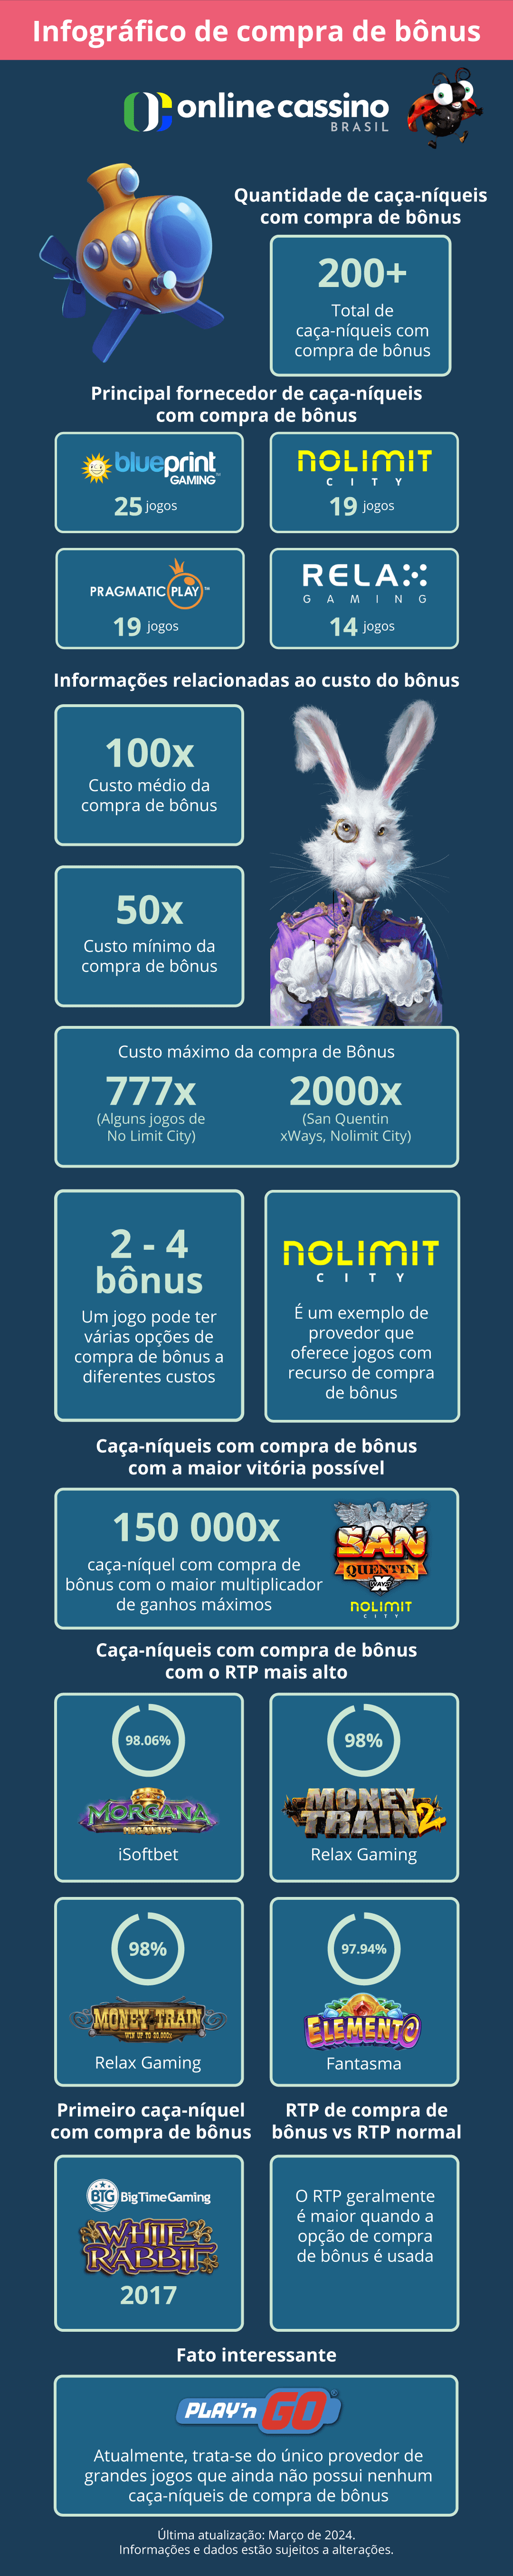 Caça-níqueis com compra de bônus_Brasil